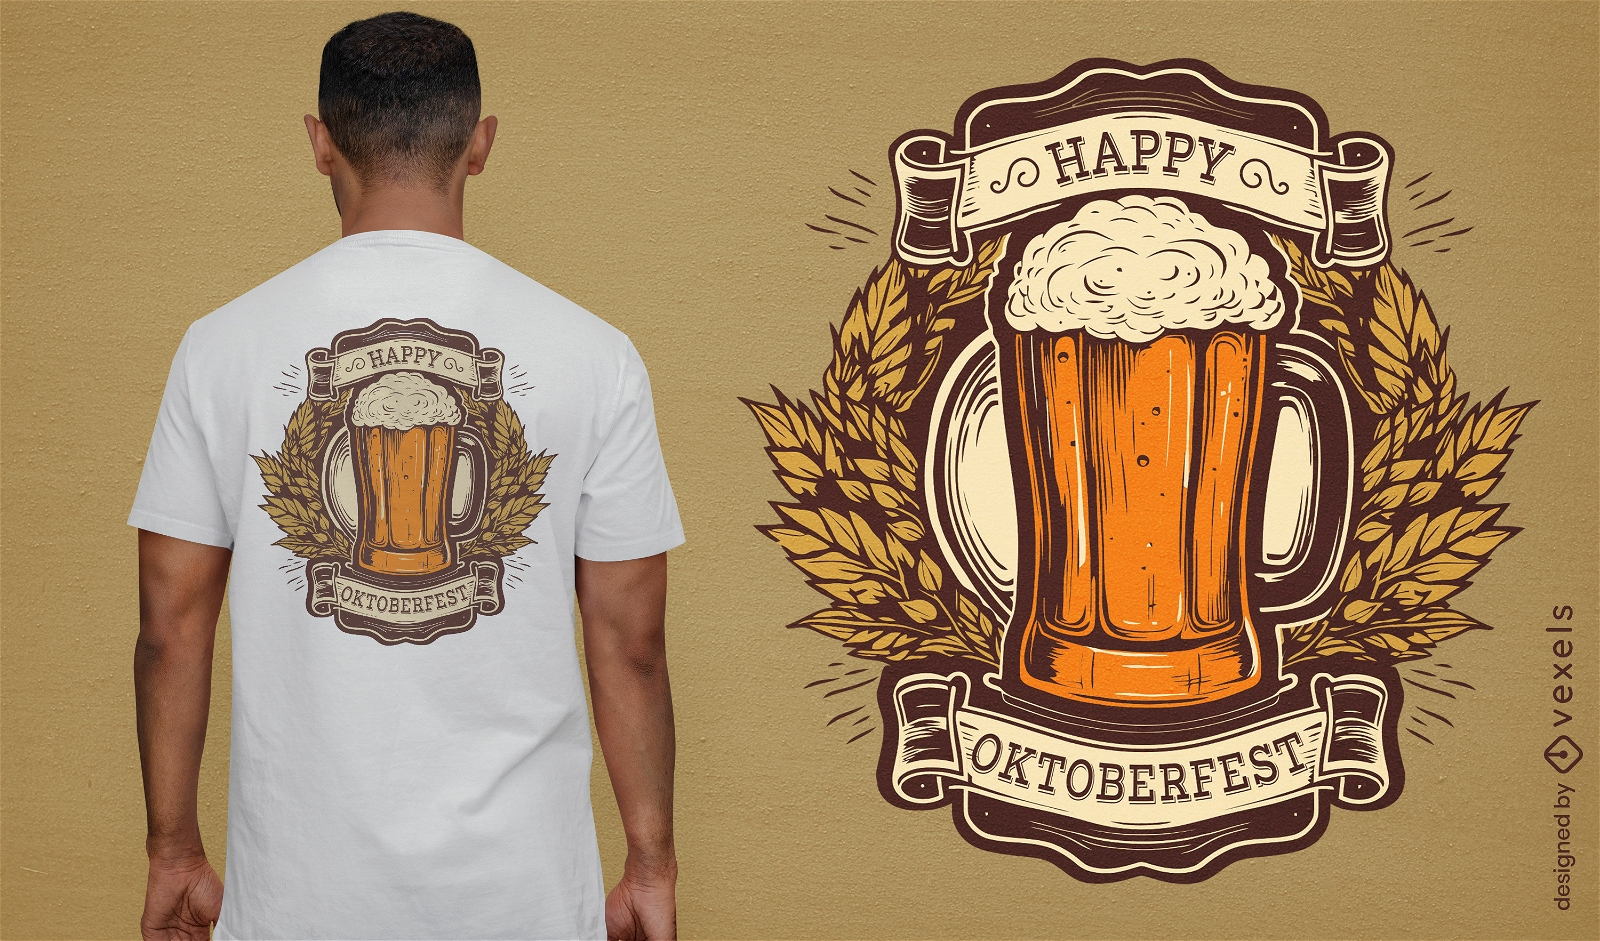 Dise?o de camiseta de insignia de cerveza Oktoberfest